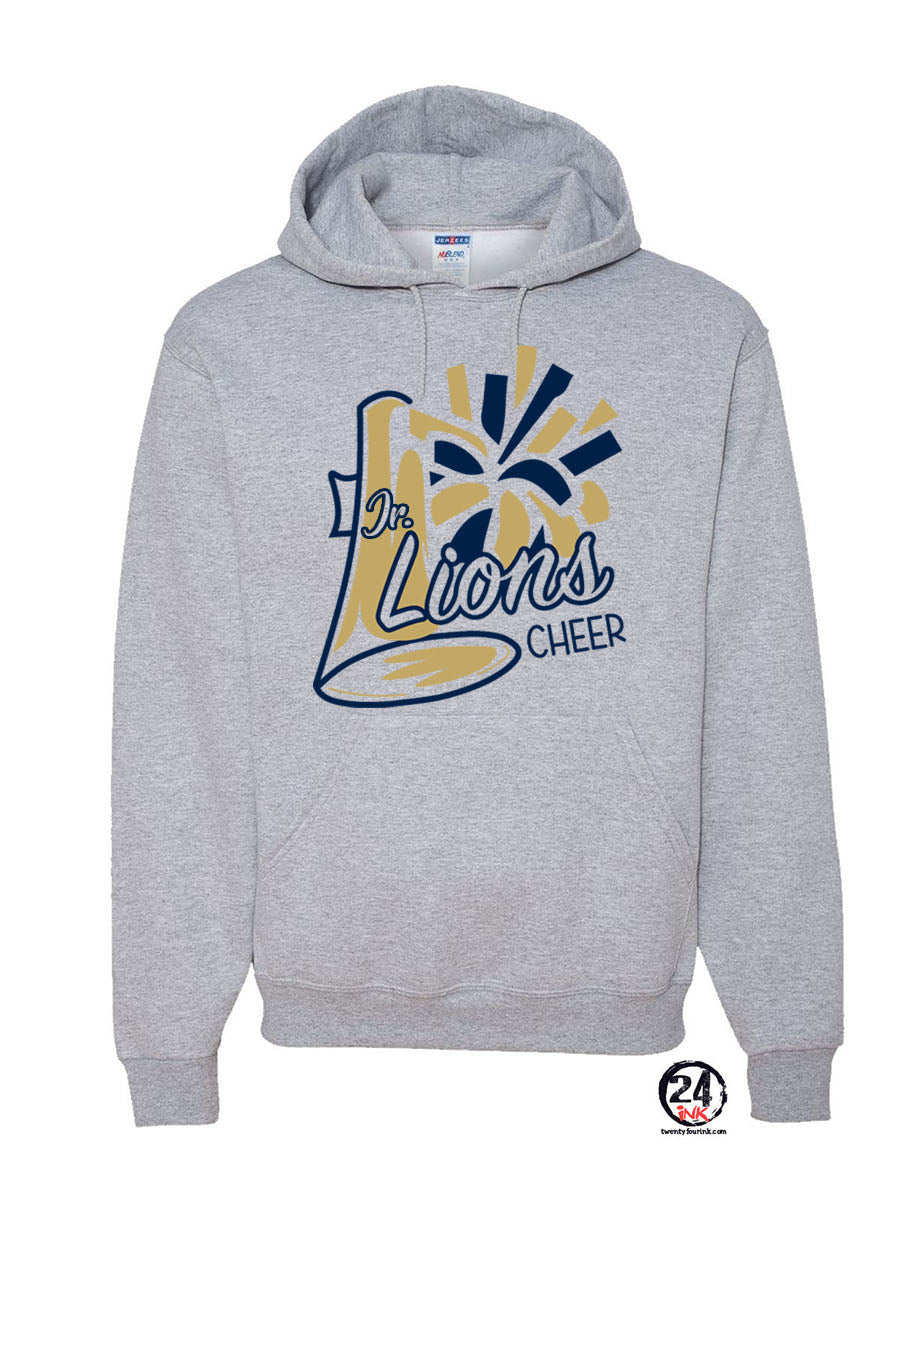 Lions Cheer Design 2 Hooded Sweatshirt